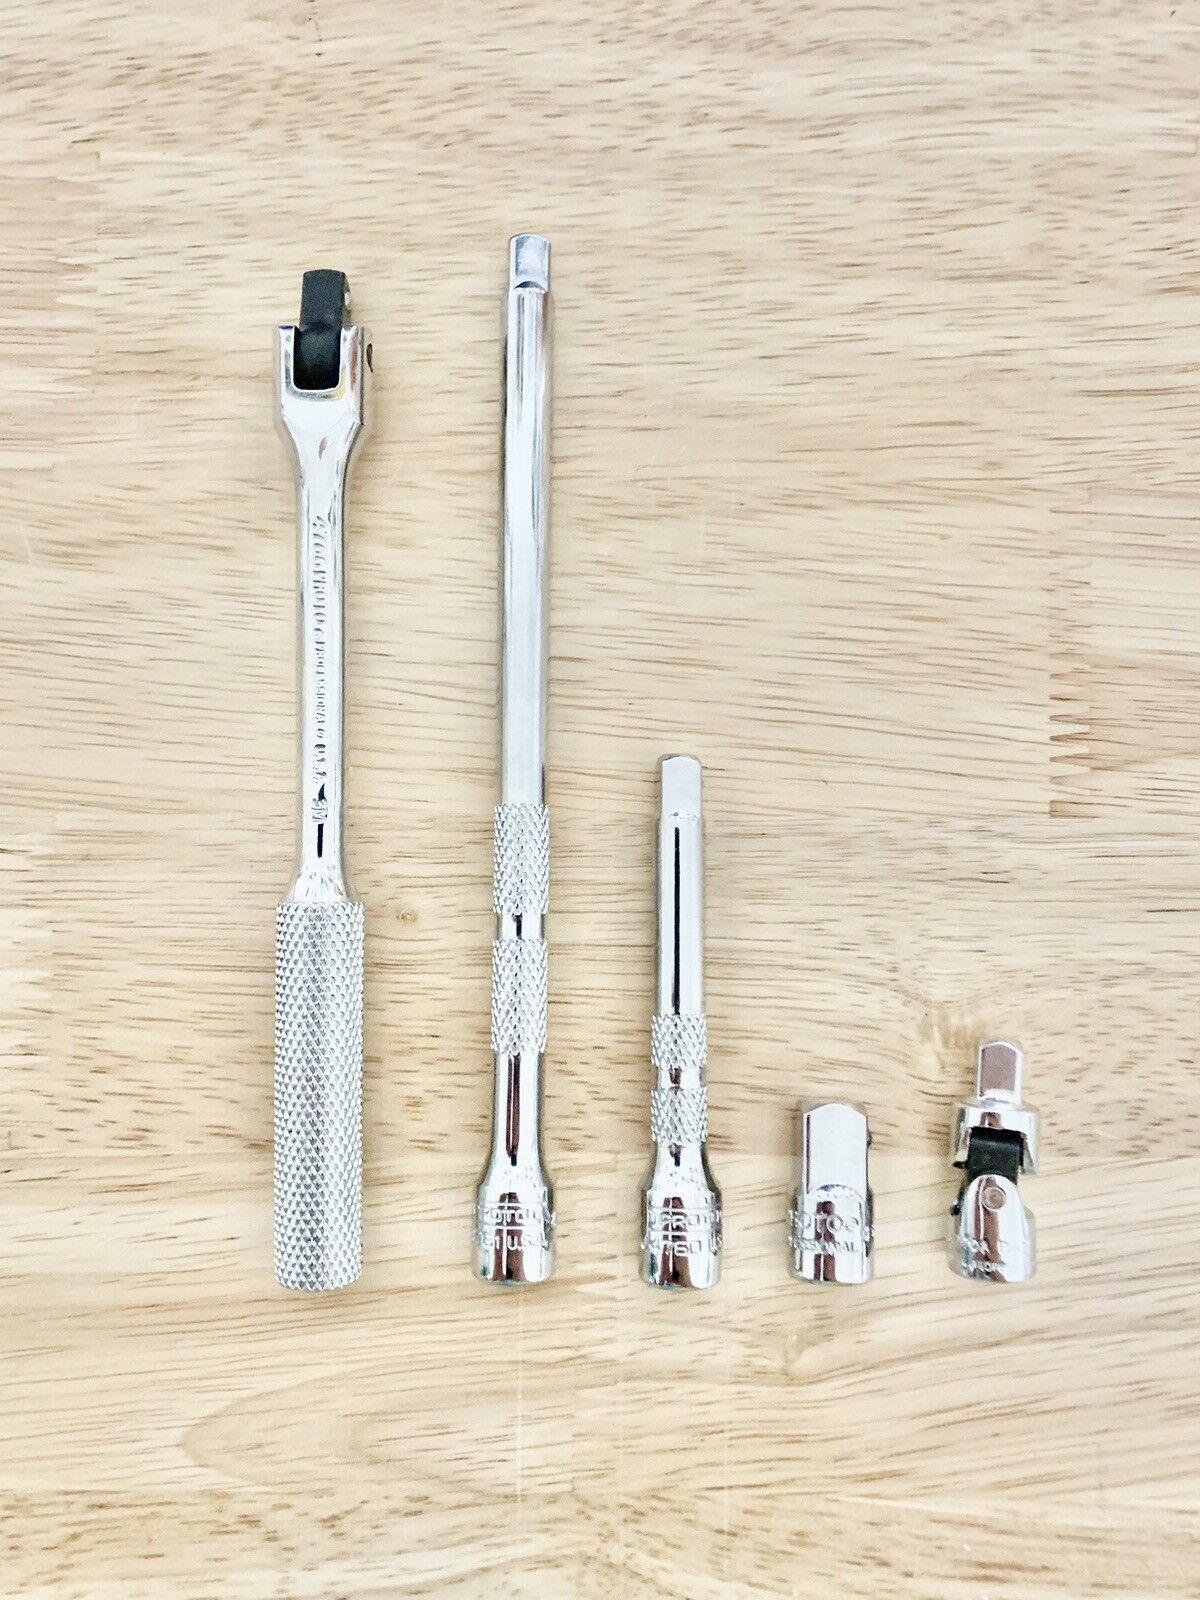 PROTO 5 Tools, 1/4” Drive Breaker Bar, Universal, 3” + 6” Extensions, 3/8” Adapt